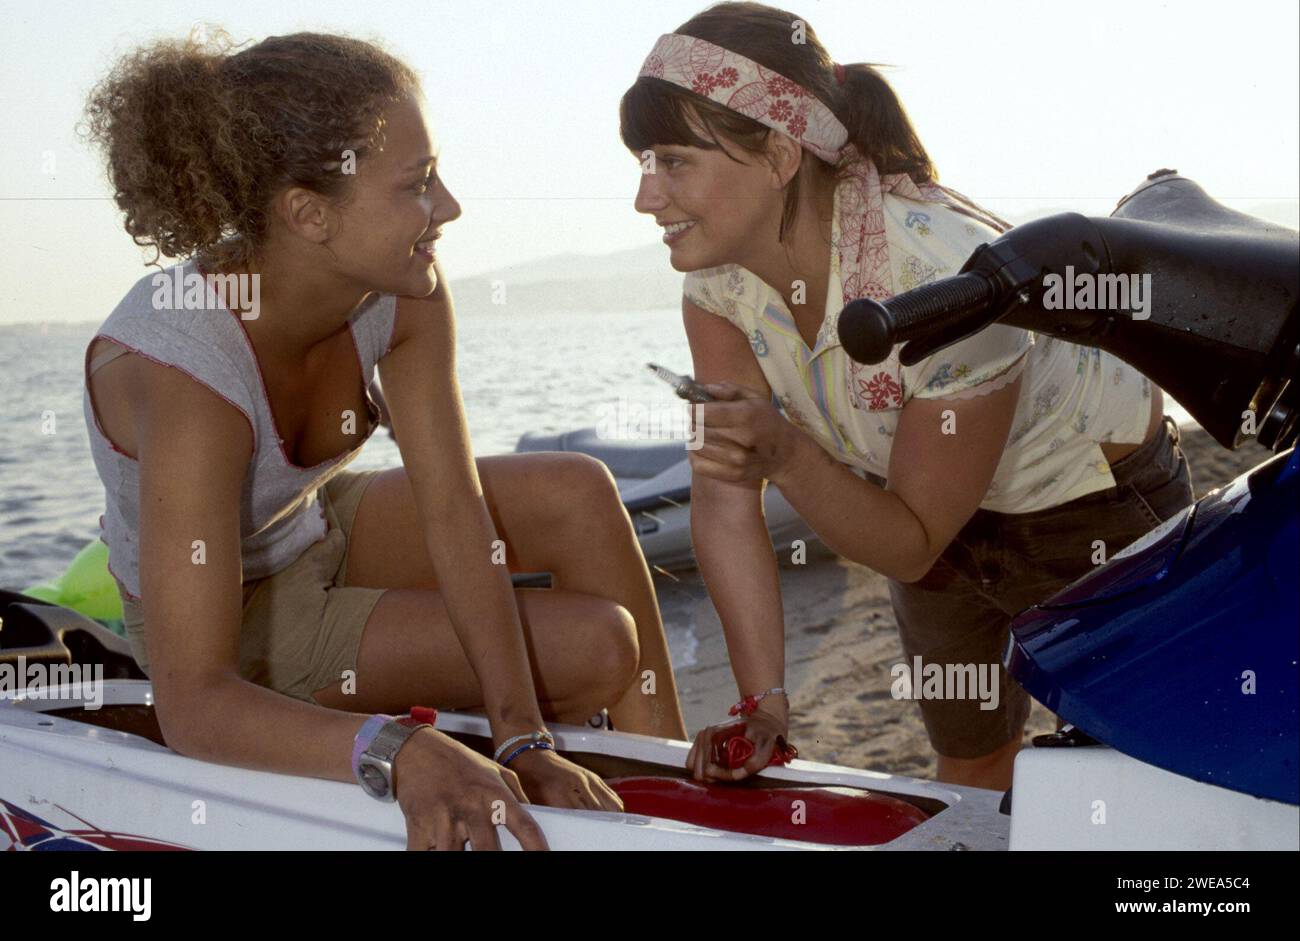 Szene am Strand mit Schauspielerin Oona Devi Liebich und Anna Bertheau für den Fernsehfilm Megalodon - Hai Alarm auf Mallorca, Regie: Jorgo Papavassiliou Erscheinungsjahr 2004. Stockfoto